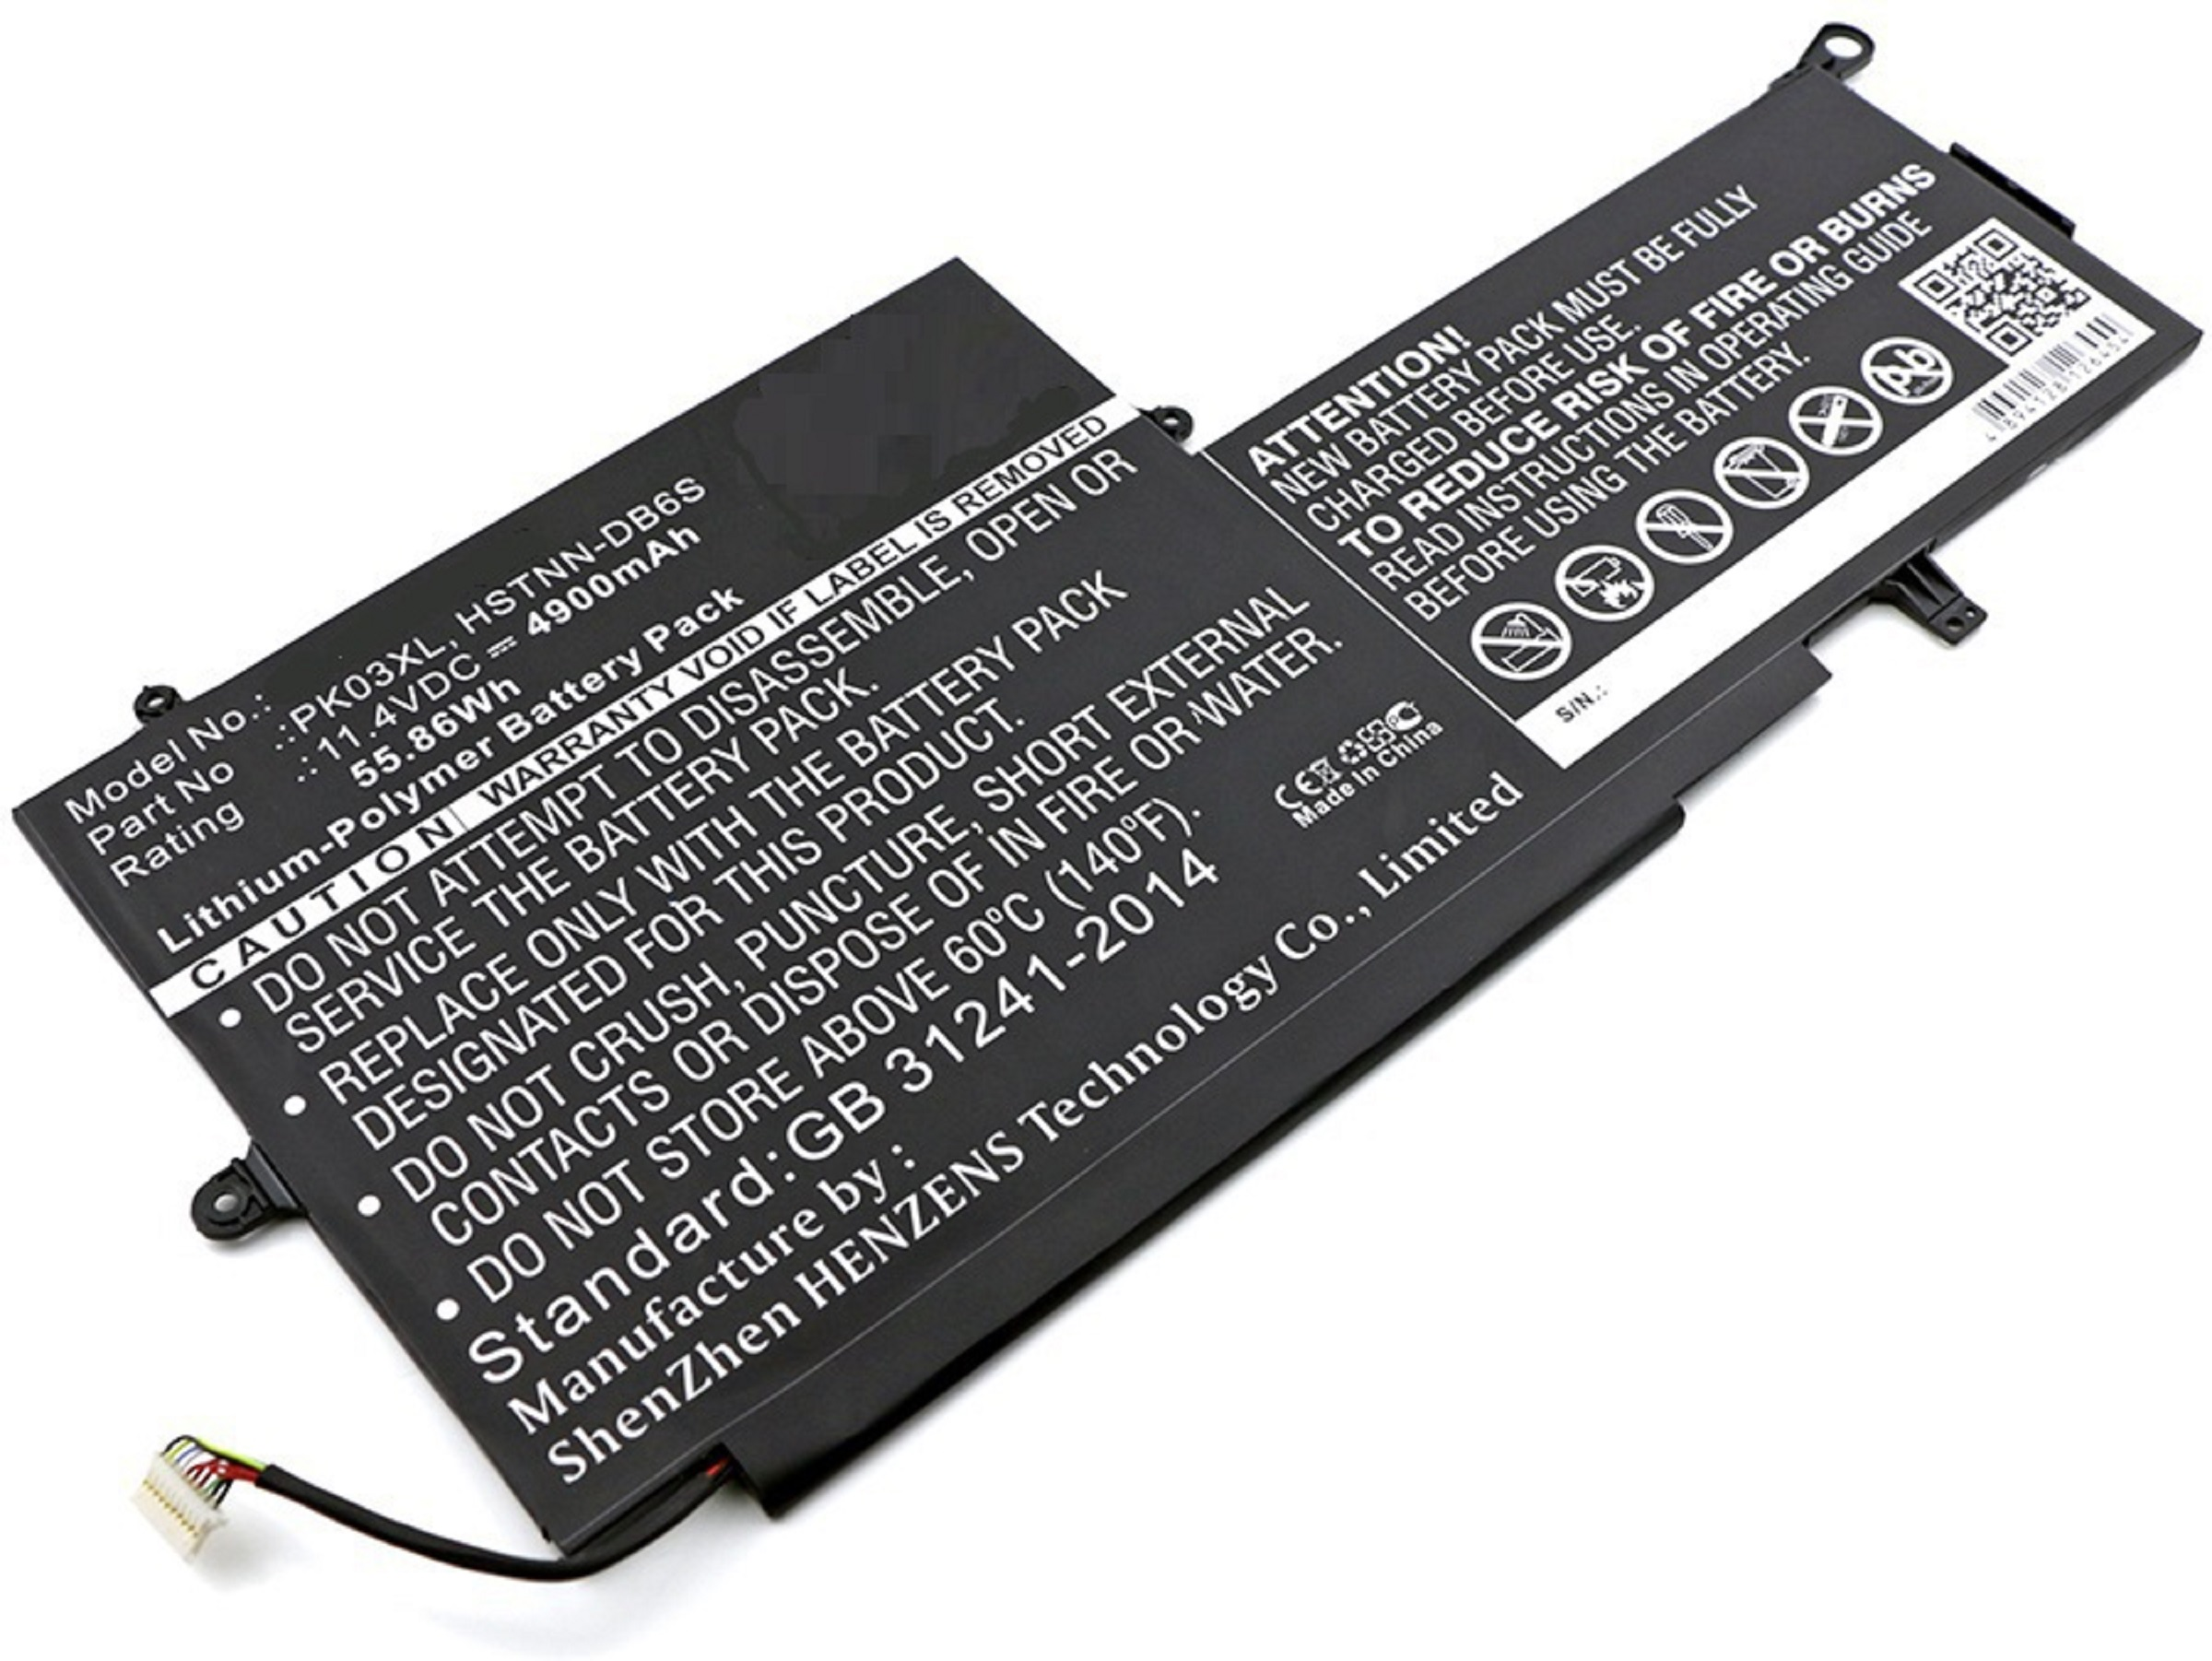 HP 13-4000nb Spectre MOBILOTEC kompatibel (L0Z41ea) Li-Pol Akku, Akku 4900 11.4 mit x360 Li-Pol, mAh Volt,